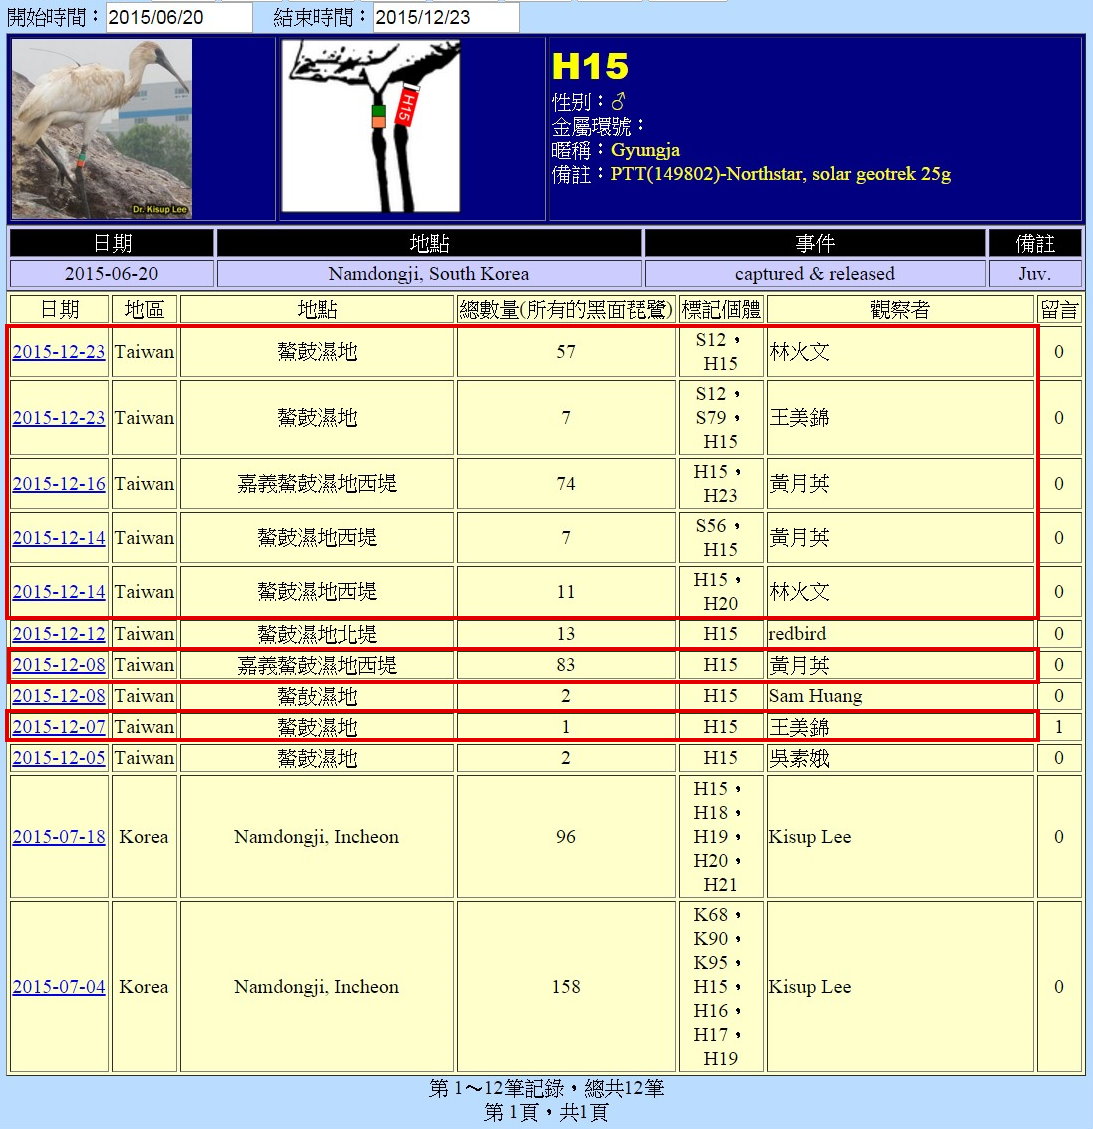 黑琵H15在鰲鼓濕地由解說員記錄次數-20151223-後製.jpg - 黑面琵鷺